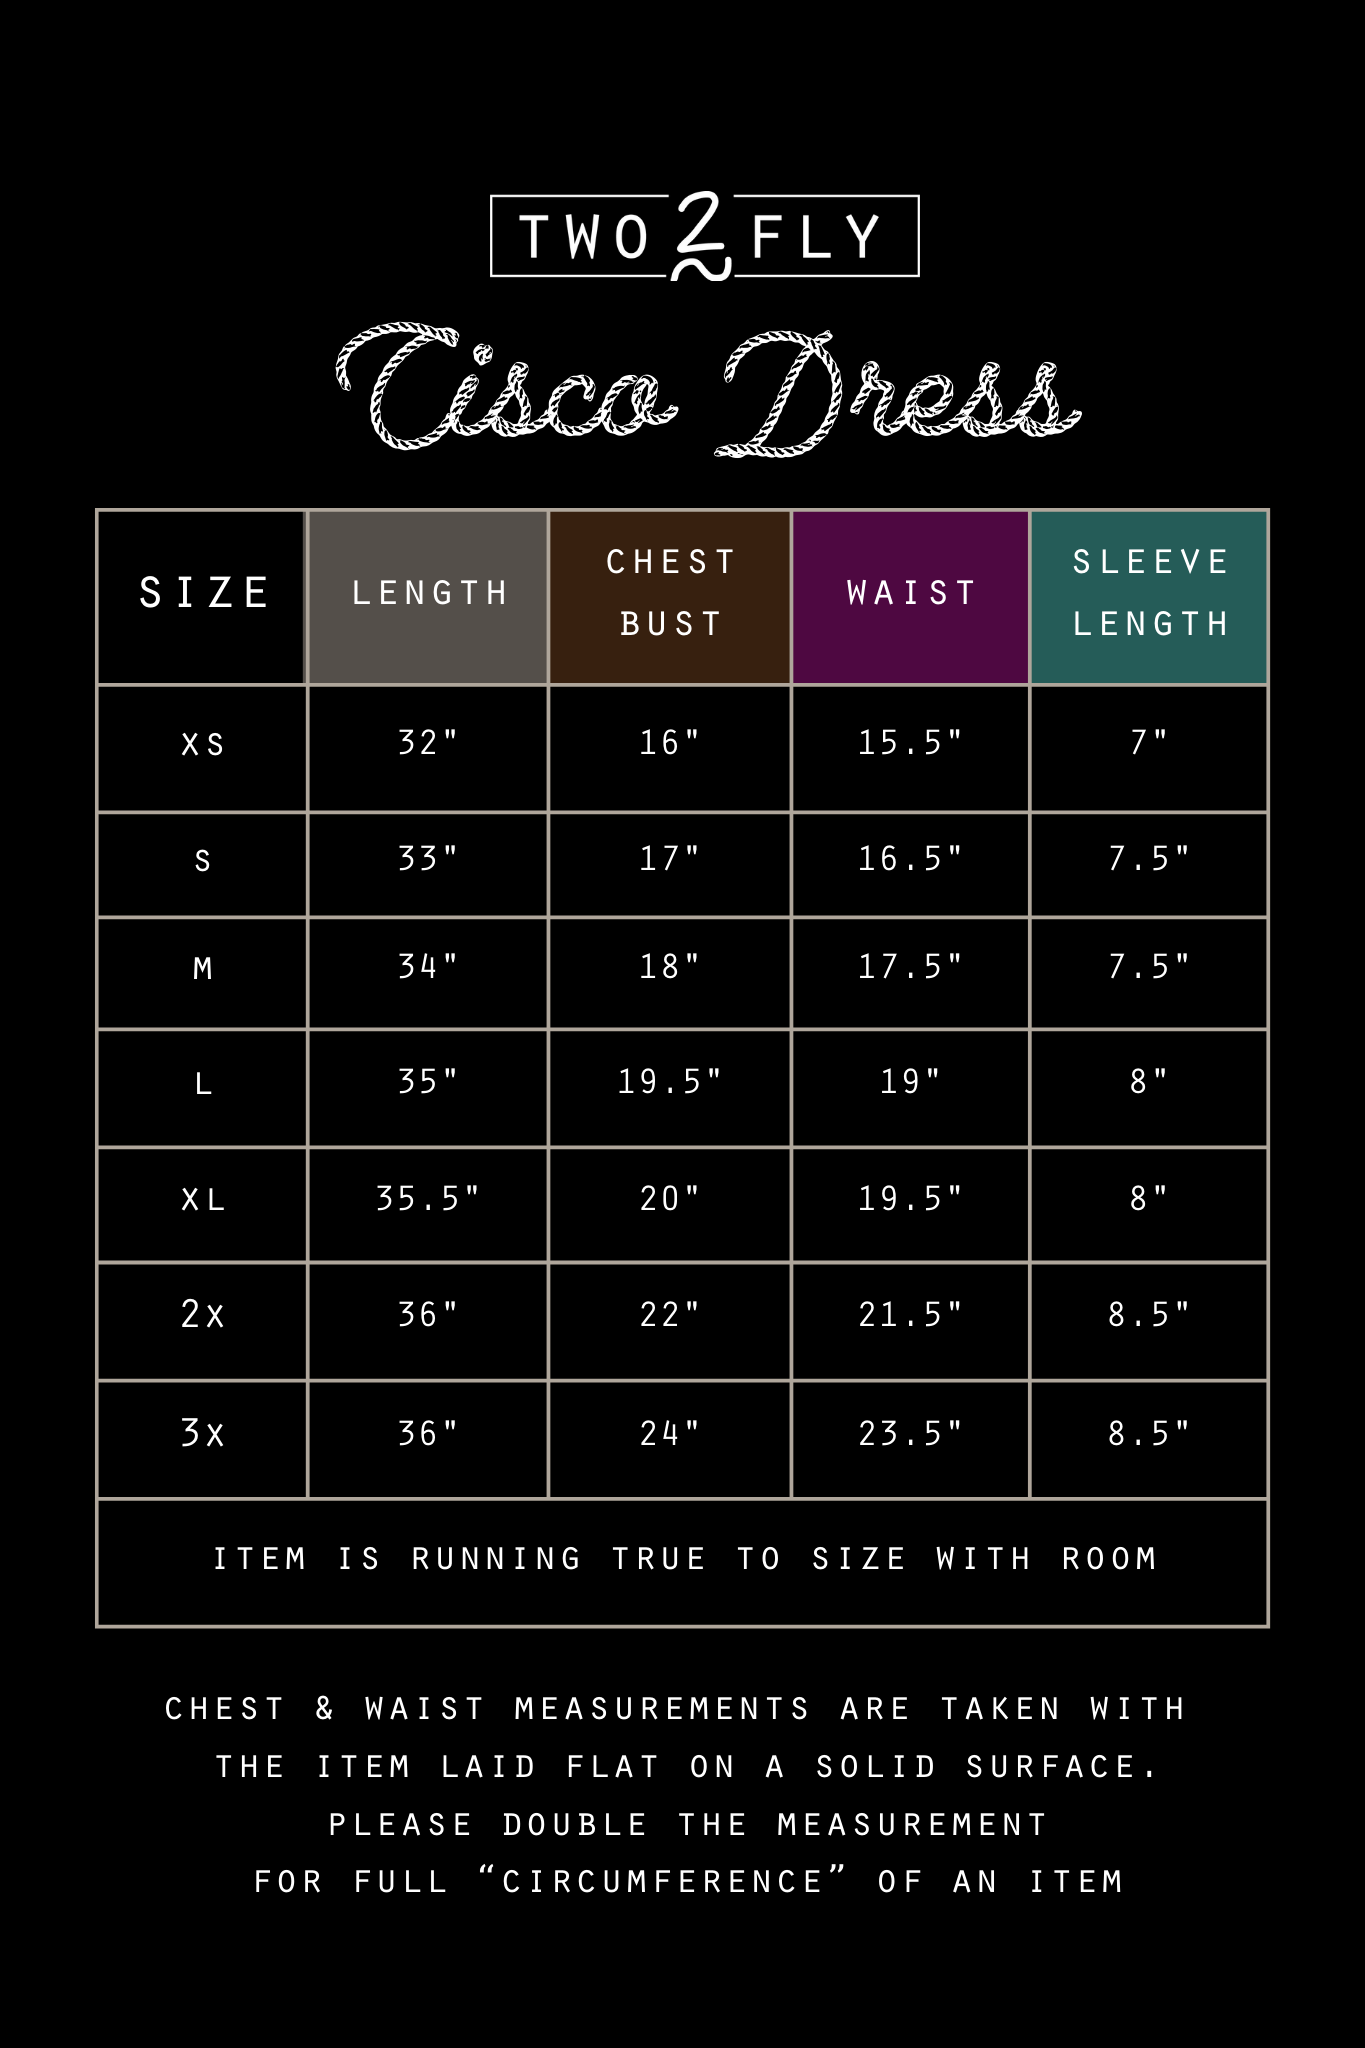 CISCO DRESS [XL-3X ONLY]